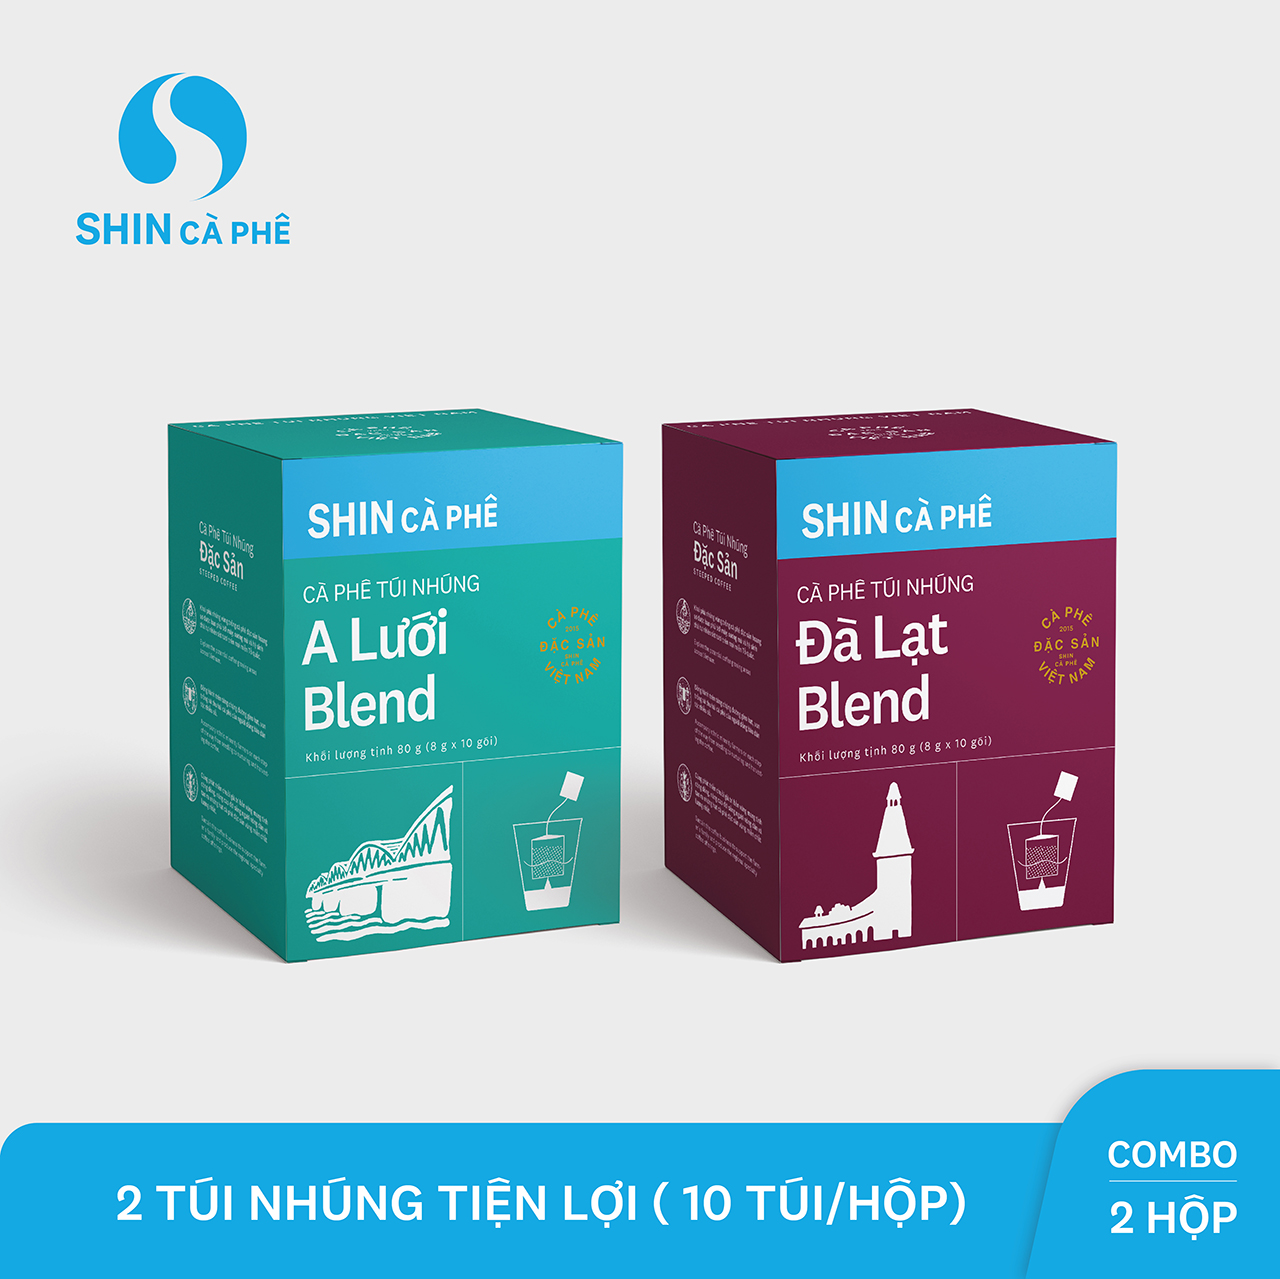 SHIN Cà Phê - Combo túi nhúng A Lưới và Đà lạt - Hộp 10 gói